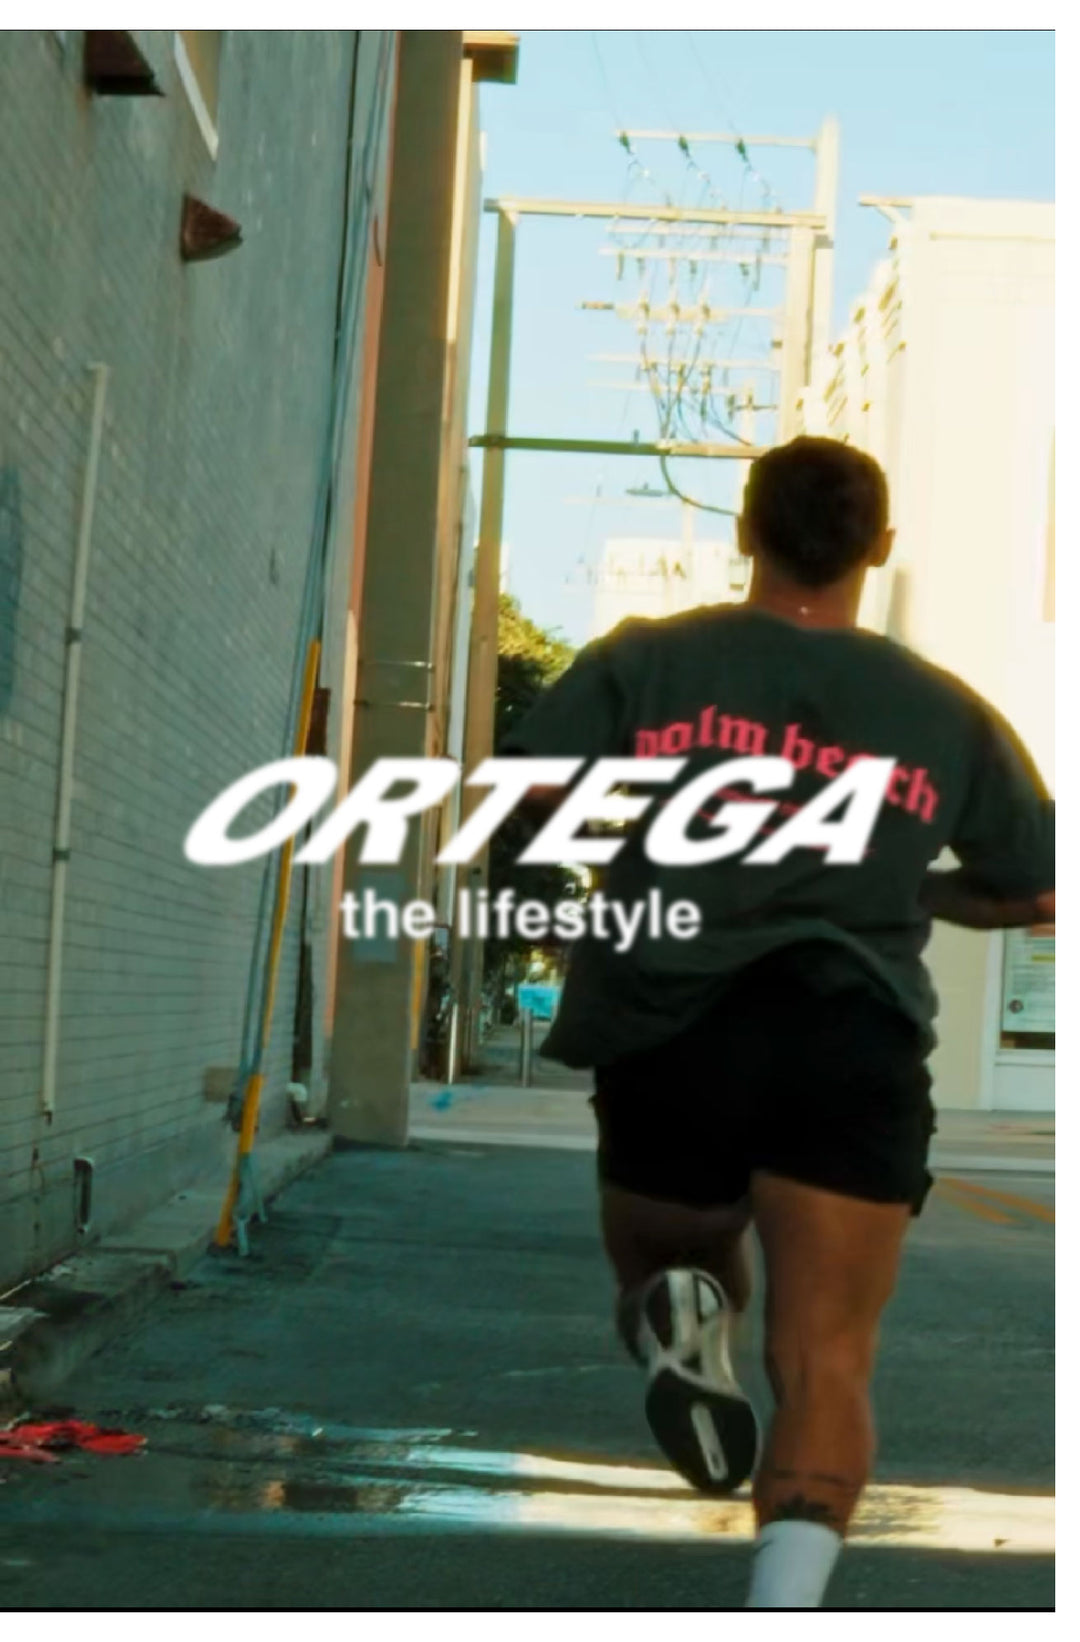 Ortega - The lifestyle